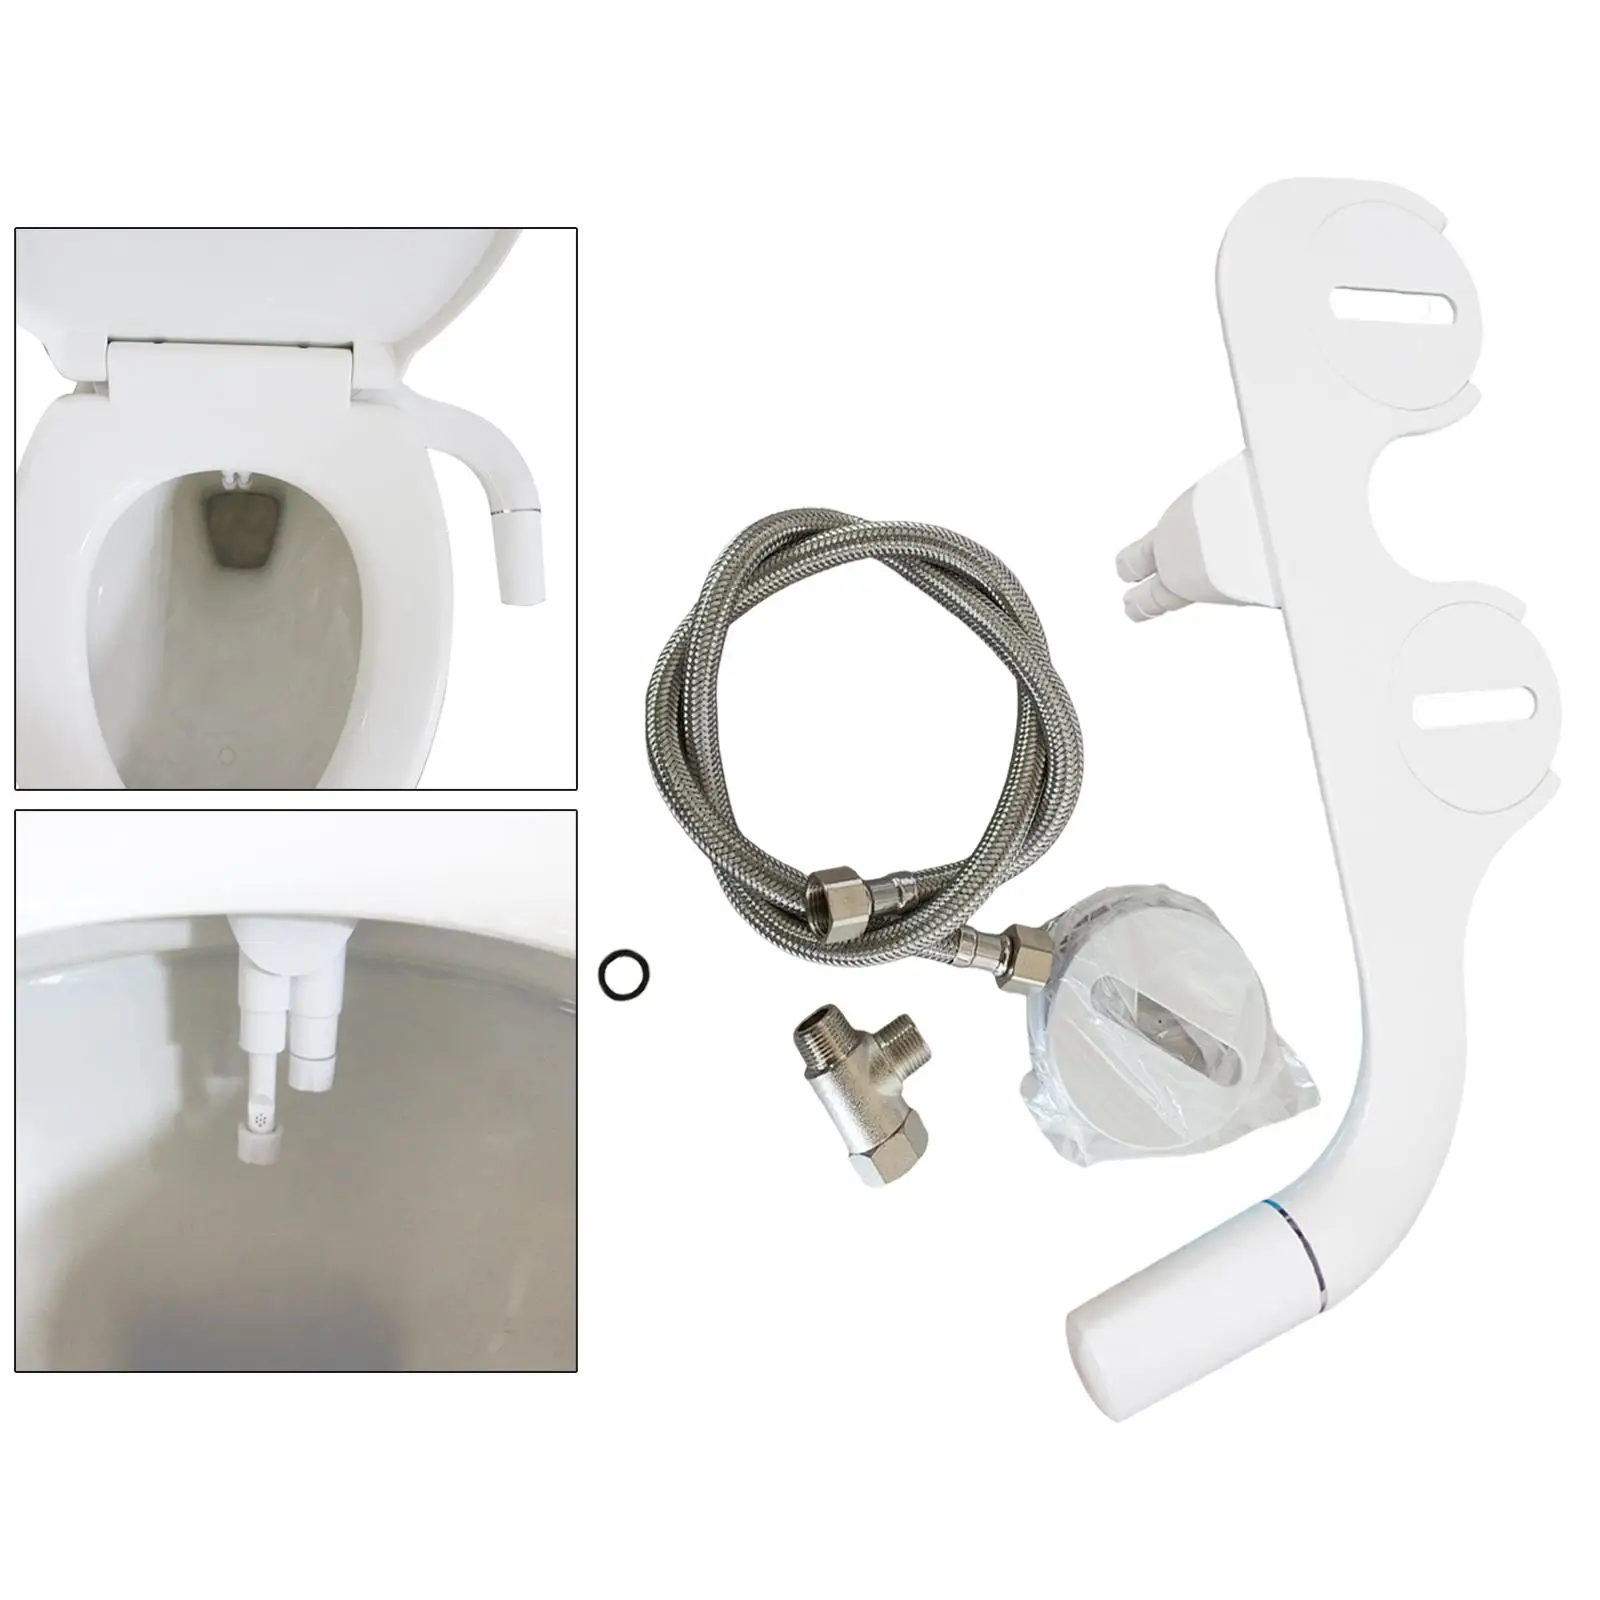 Bidet Toilet Seat Attachment Adjustable Mechanical Einfach zu installieren for Bathroom